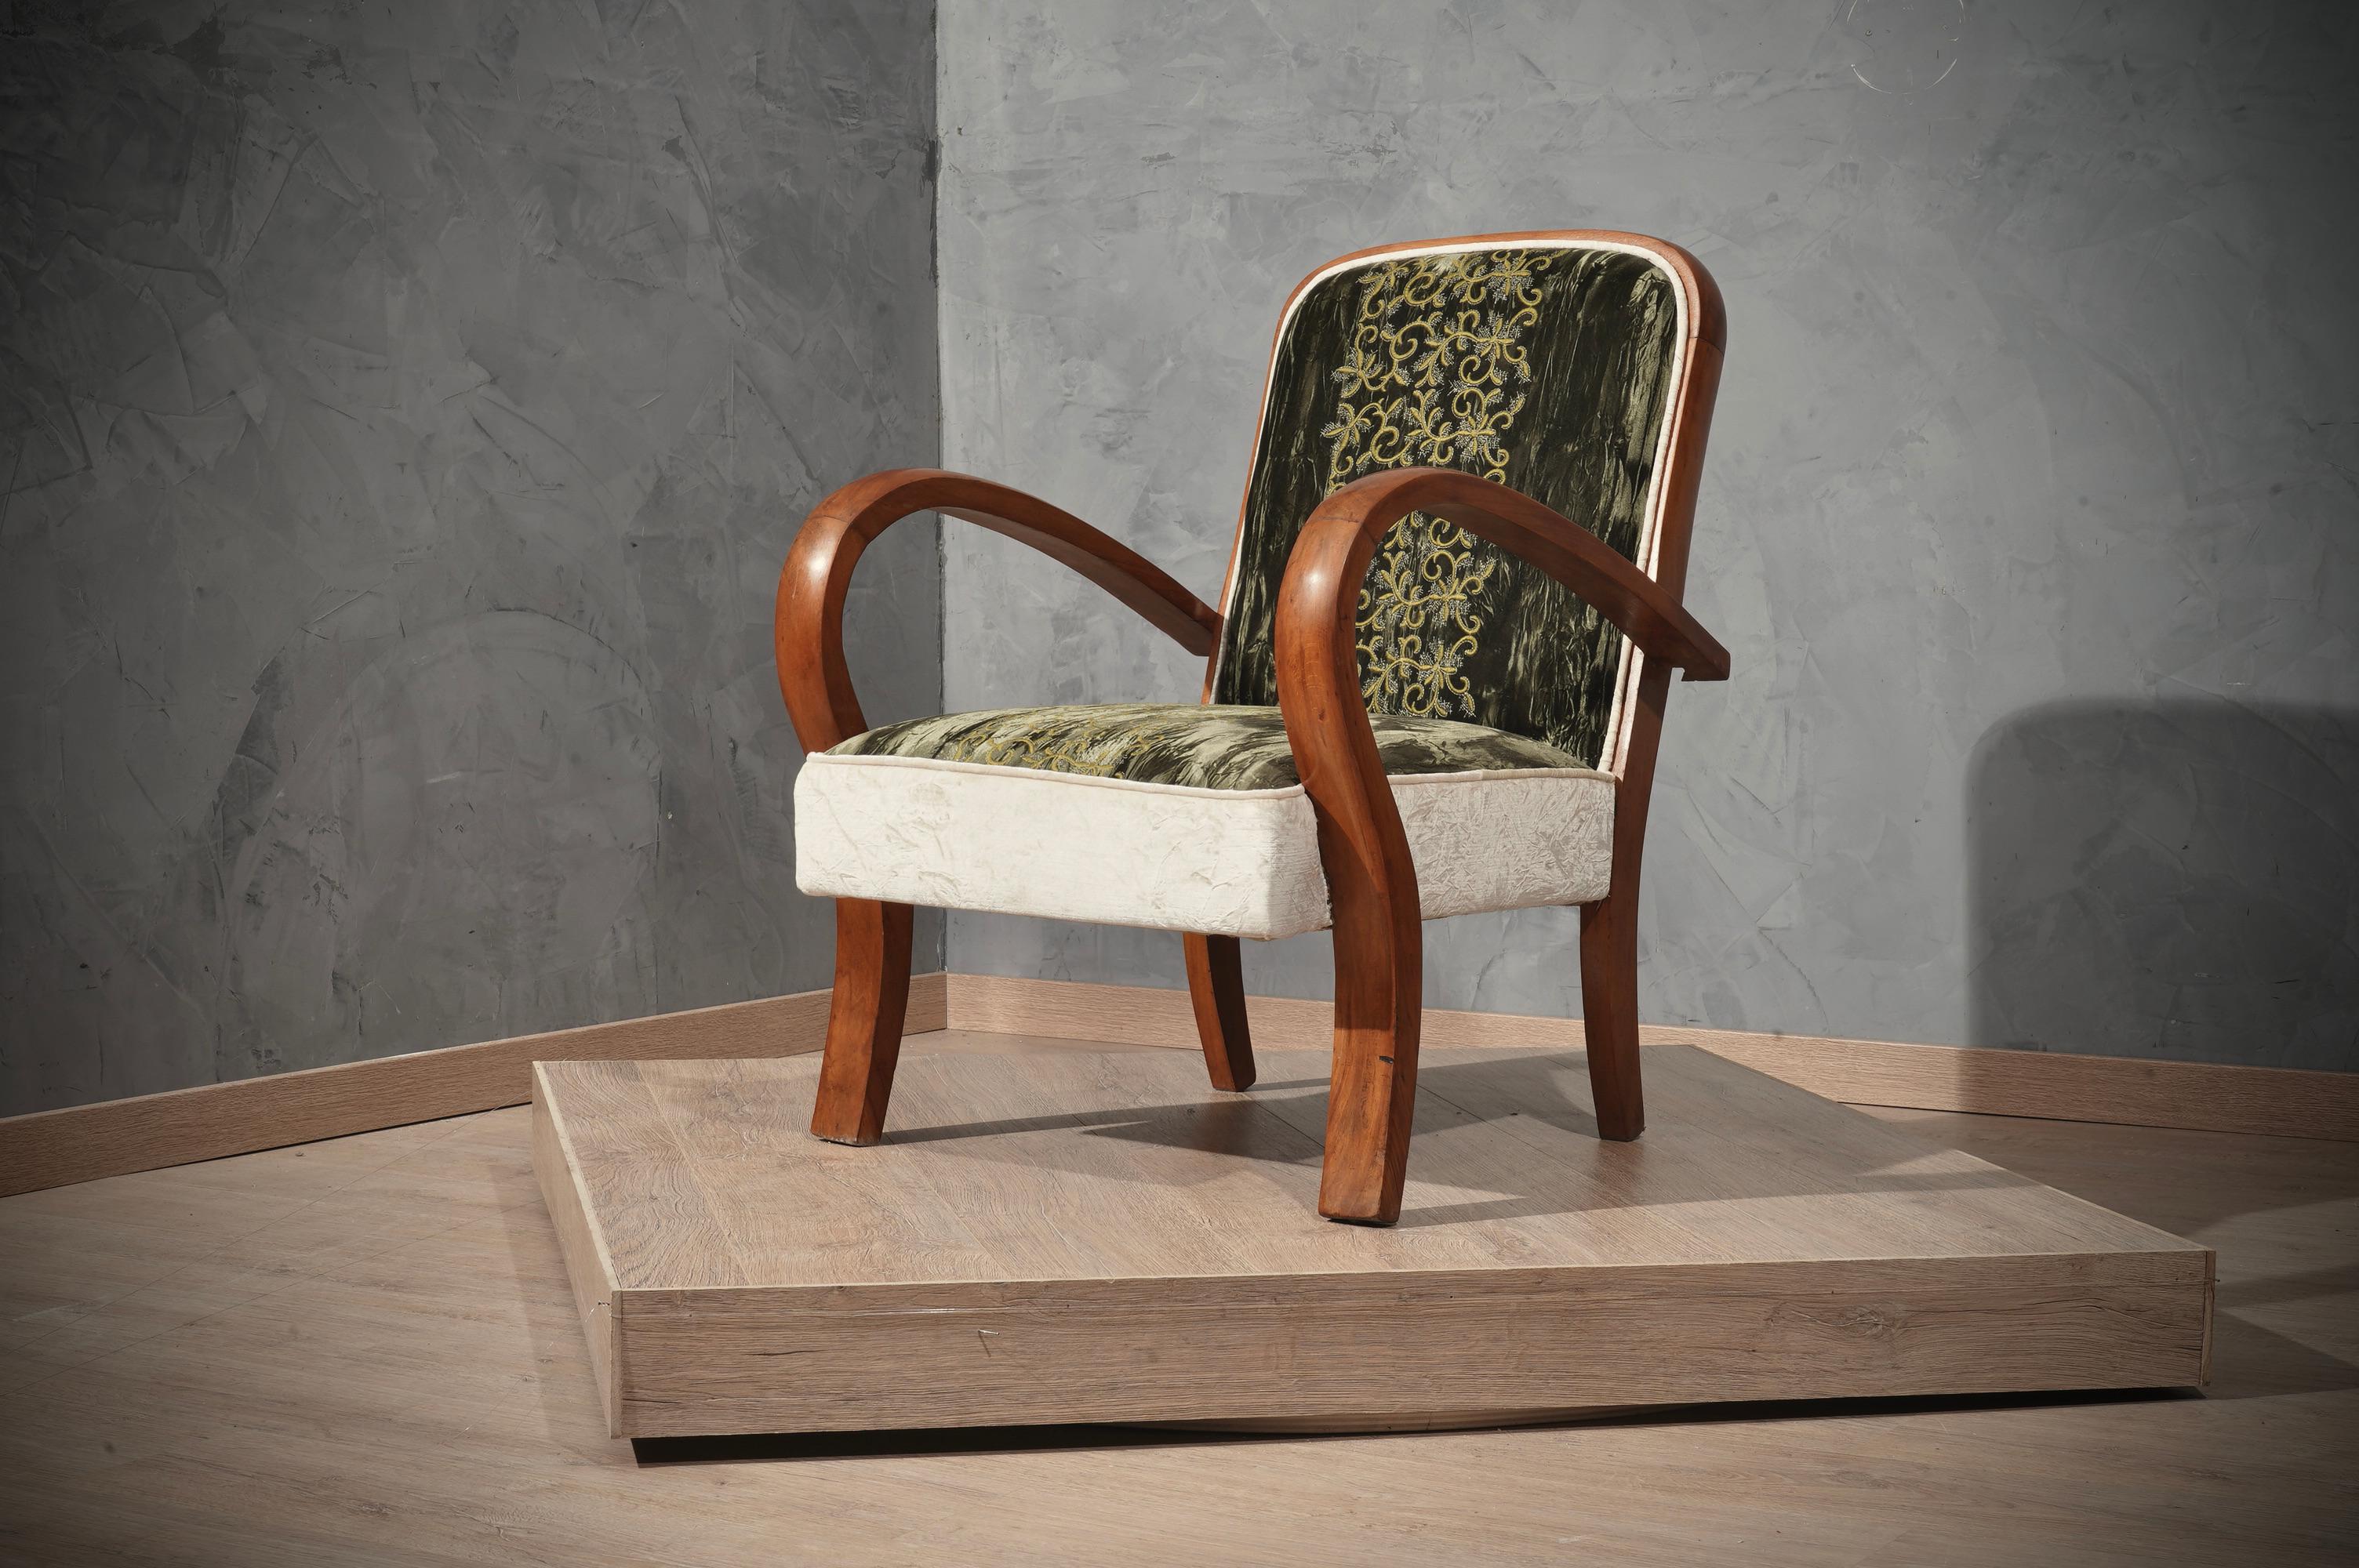 Mit italienischen Art-Deco-Sesseln im Stil von Paolo Buffa, Vittorio Dassi und Osvaldo Borsani. Armlehne aus gebogenem Holz und sehr feine Polsterung aus einer italienischen Seidenfabrik.

Das Gestell ist aus sehr gut poliertem Kirschbaumholz; der